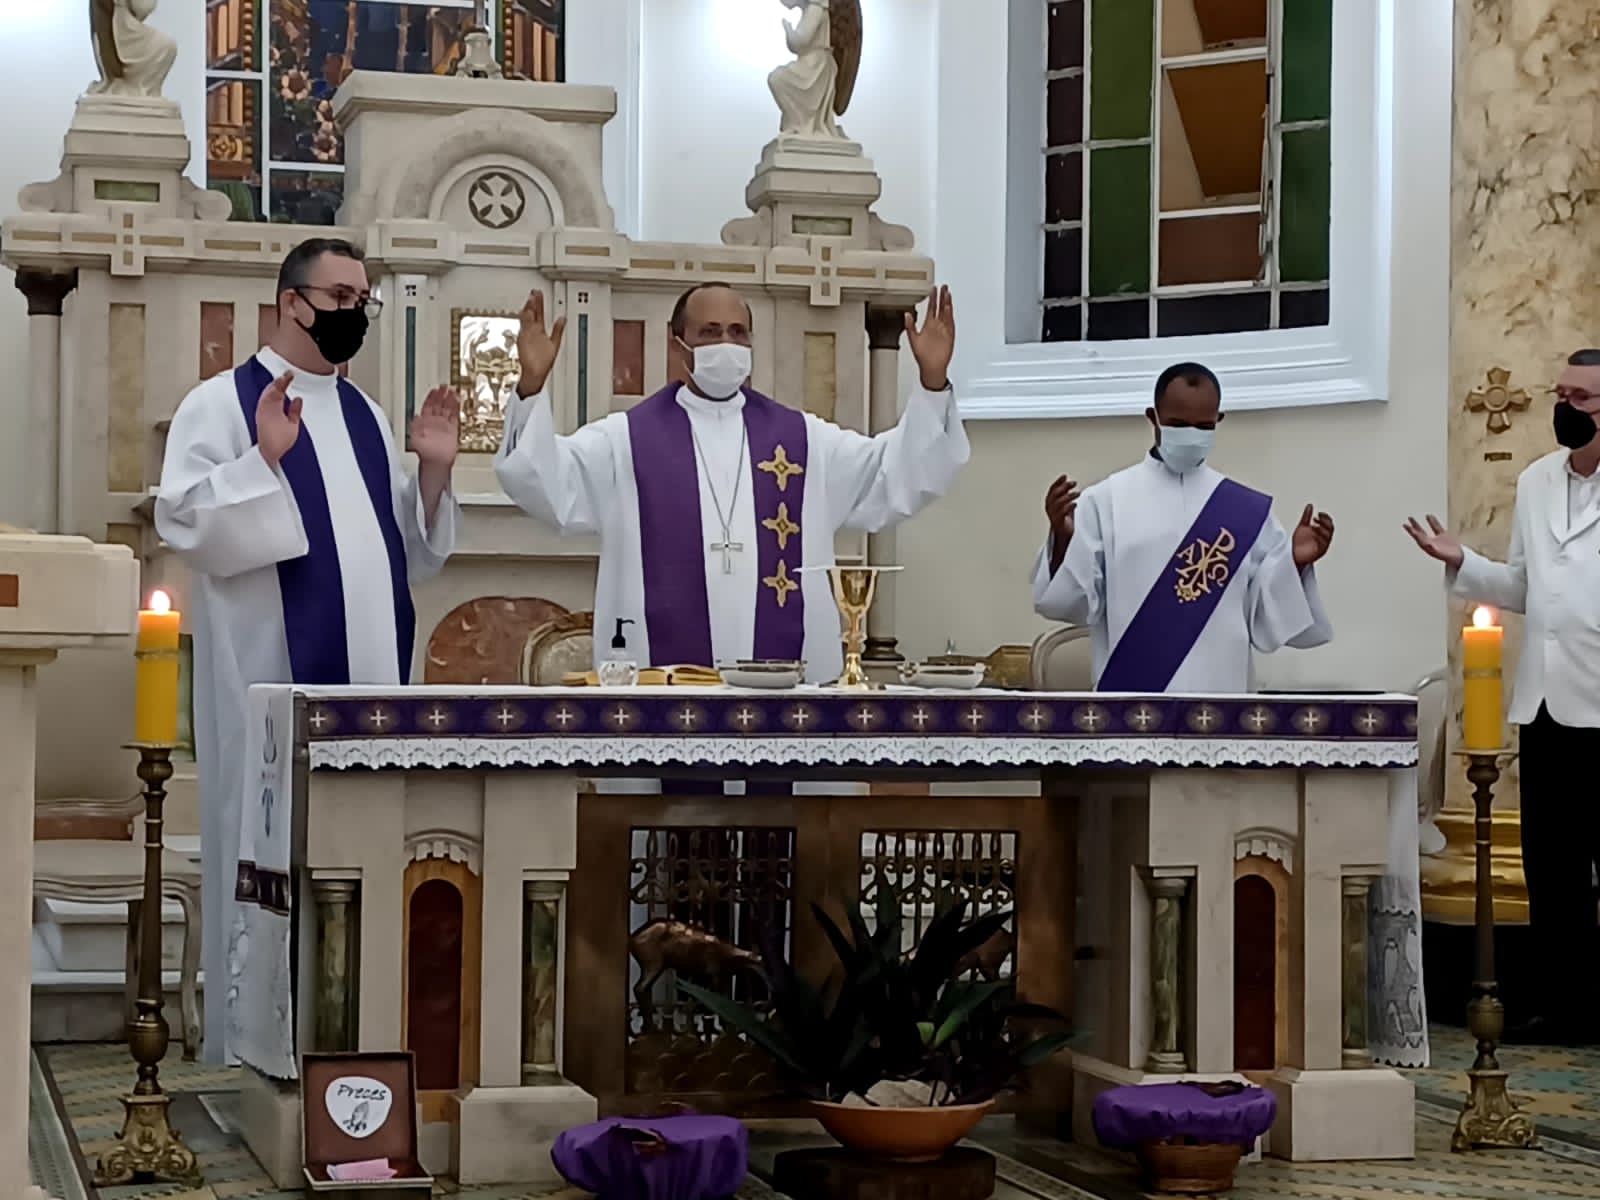 Paróquia Santa Efigênia dos Militares recebe imagem peregrina da Mãe Piedade